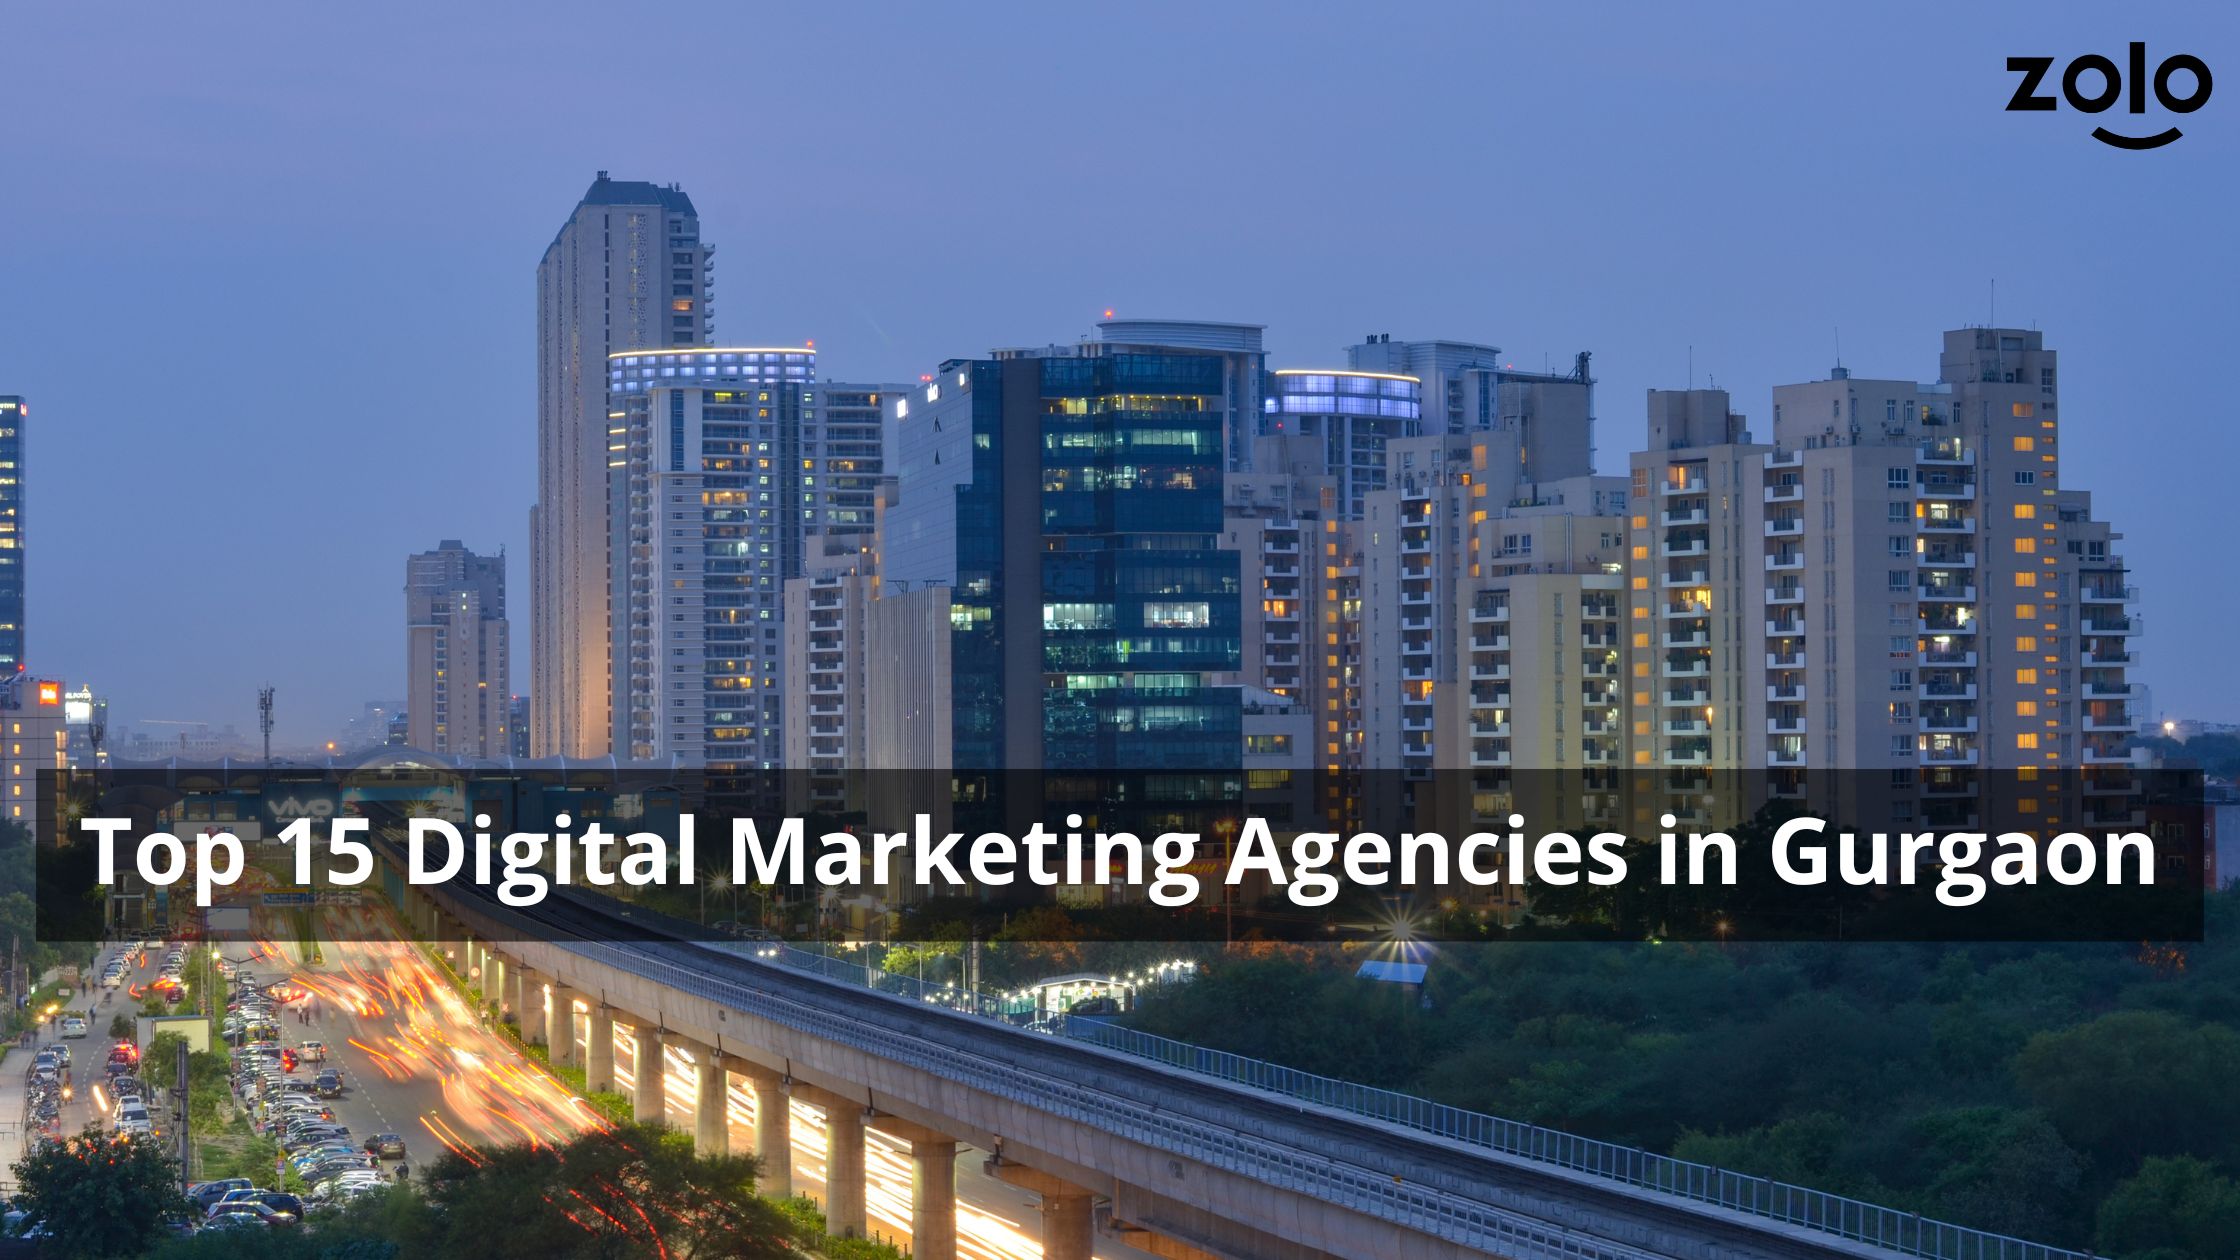 Top 15 Digital Agencies in Gurgaon - Zolo